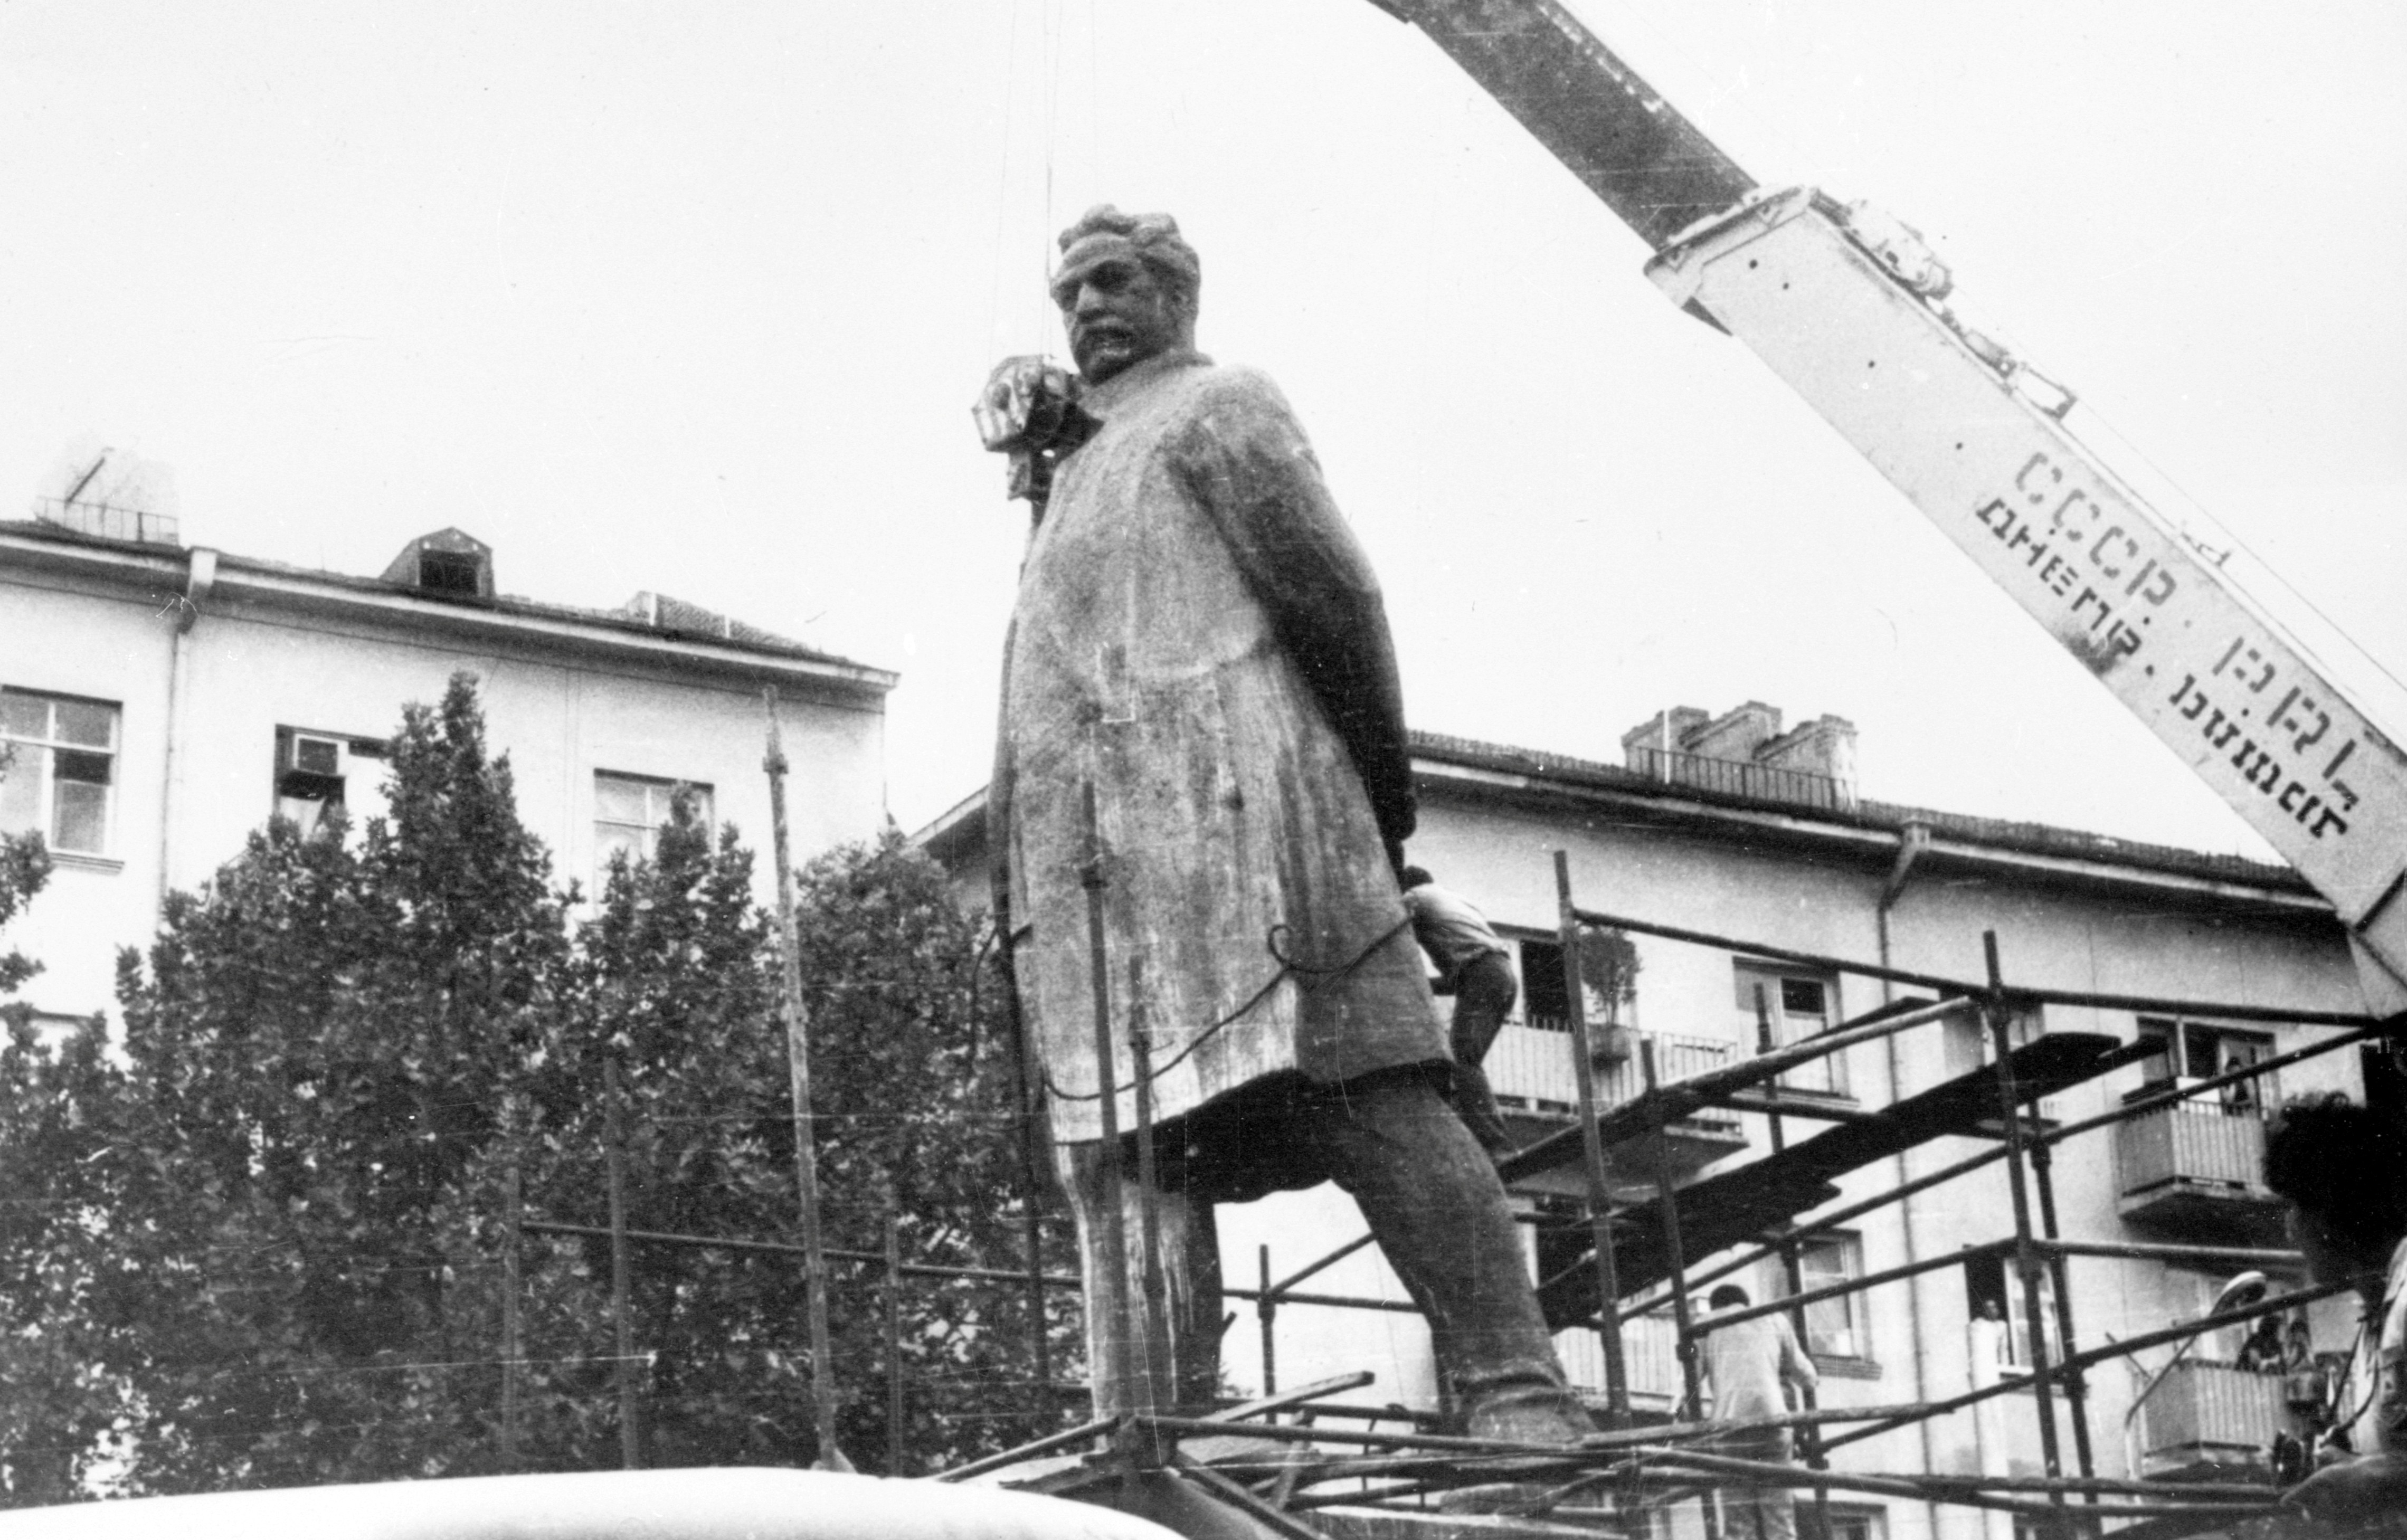 სერგო ორჯონიკიძის ძეგლის დემონტაჟი (დღევანდელი მიხეილ თამარაშვილის ქუჩა). თბილისი. <br> საქინფორმის ფოტოქრონიკა. ფოტო: გივი კიკვაძე. <br>1989. <br>
Dismantling of Sergo Orjonikidze monument (on Mikheil Tamarashvili Street). Tbilisi. <br>Sakinformi's Photography Division. Photo by Givi Kikvadze. <br> 1989.